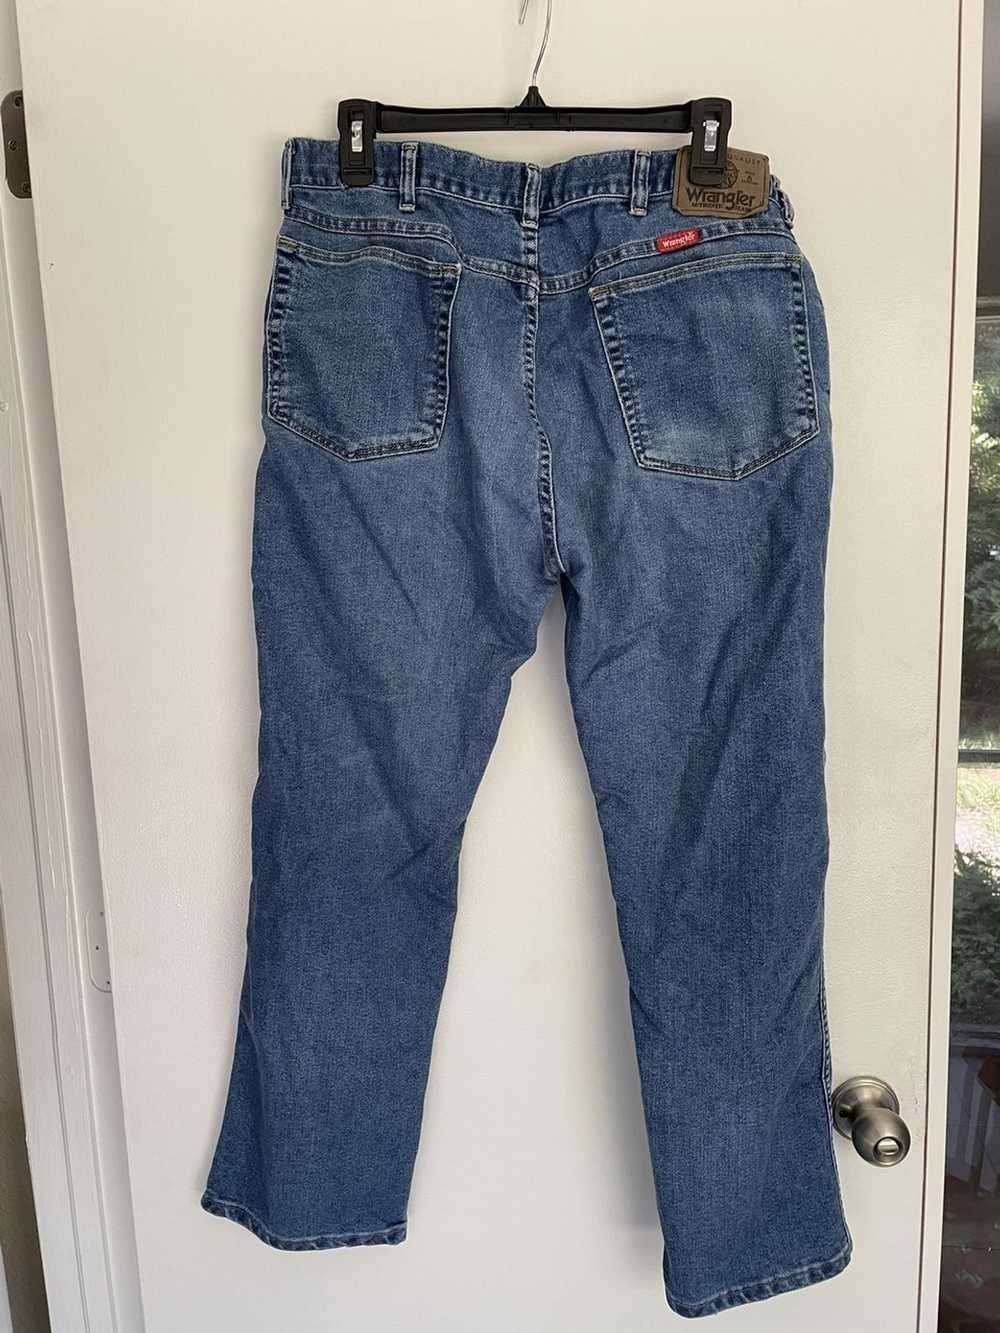 Wrangler Wrangler Jeans - image 2